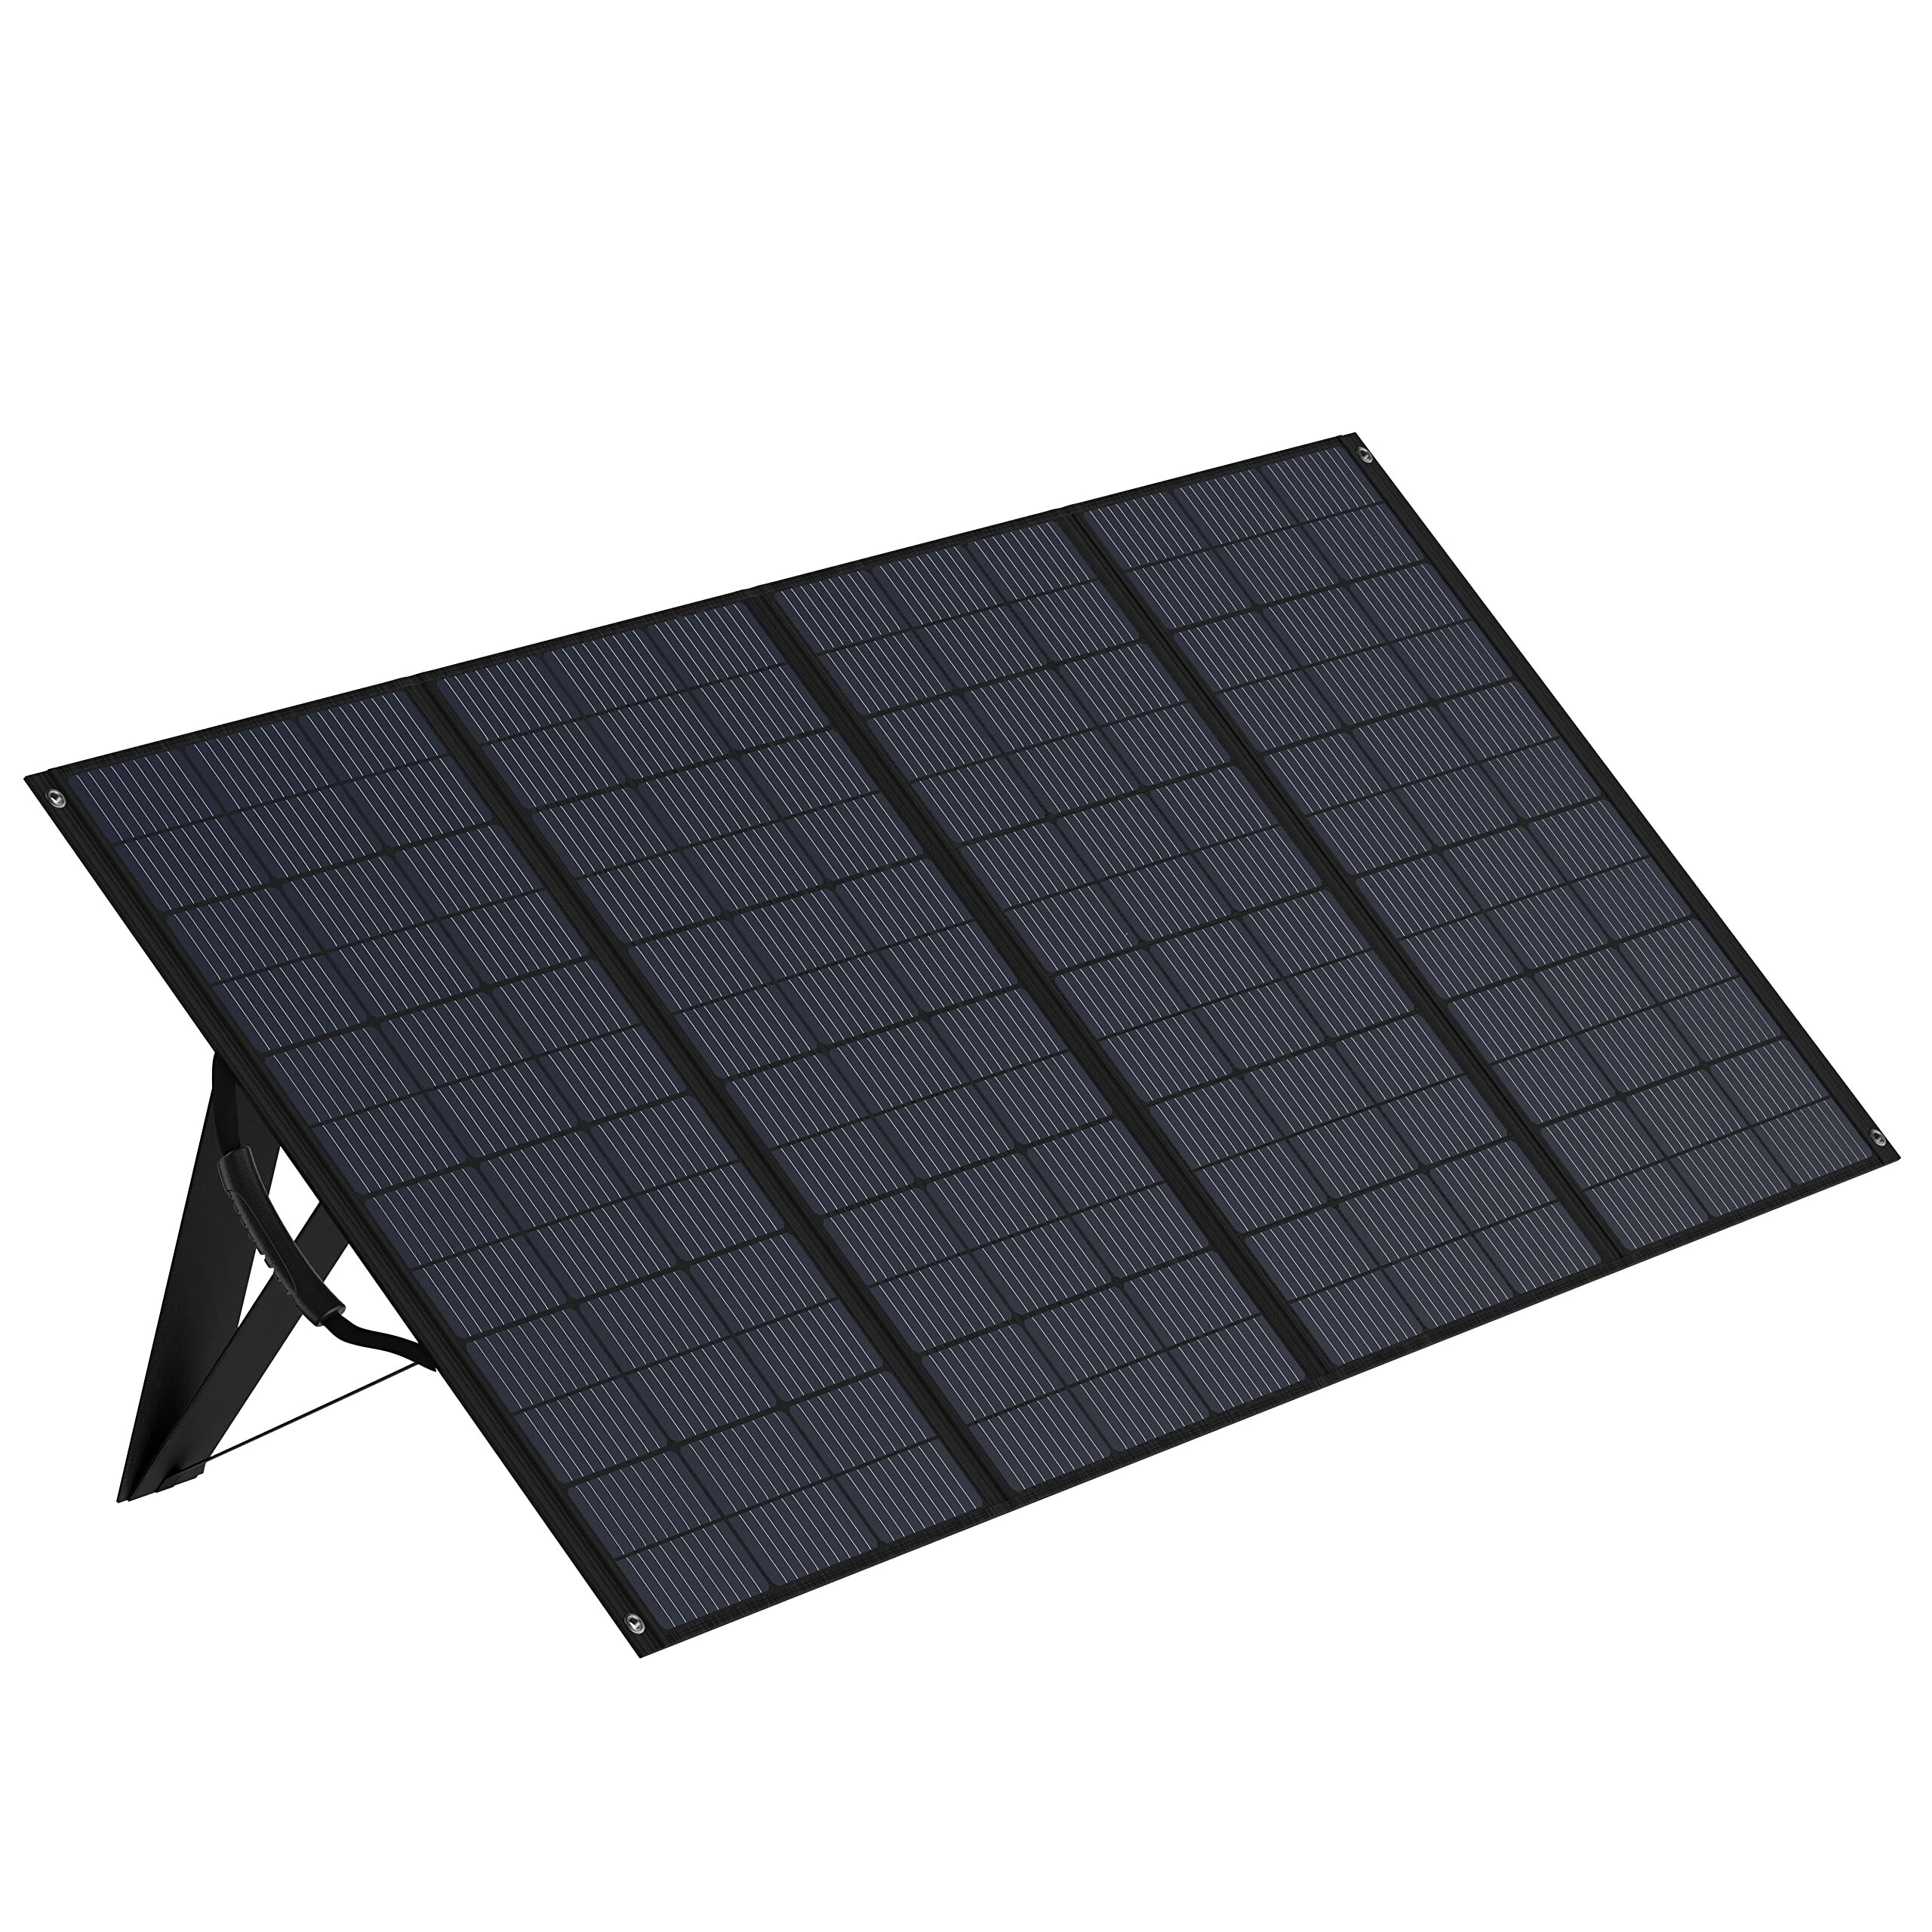 [Ευρωπαϊκή Ένωση] Φορητό ηλιακό πάνελ Zendure 400W ETFE επικάλυψη υψηλής απόδοσης 22% αδιάβροχο IP65 πολλαπλής χρήσης ηλιακός φορτιστής για περιπέτειες στη φύση, διακοπή ρεύματος, φορητό γεννήτρια ηλιακής ενέργειας Vanlife